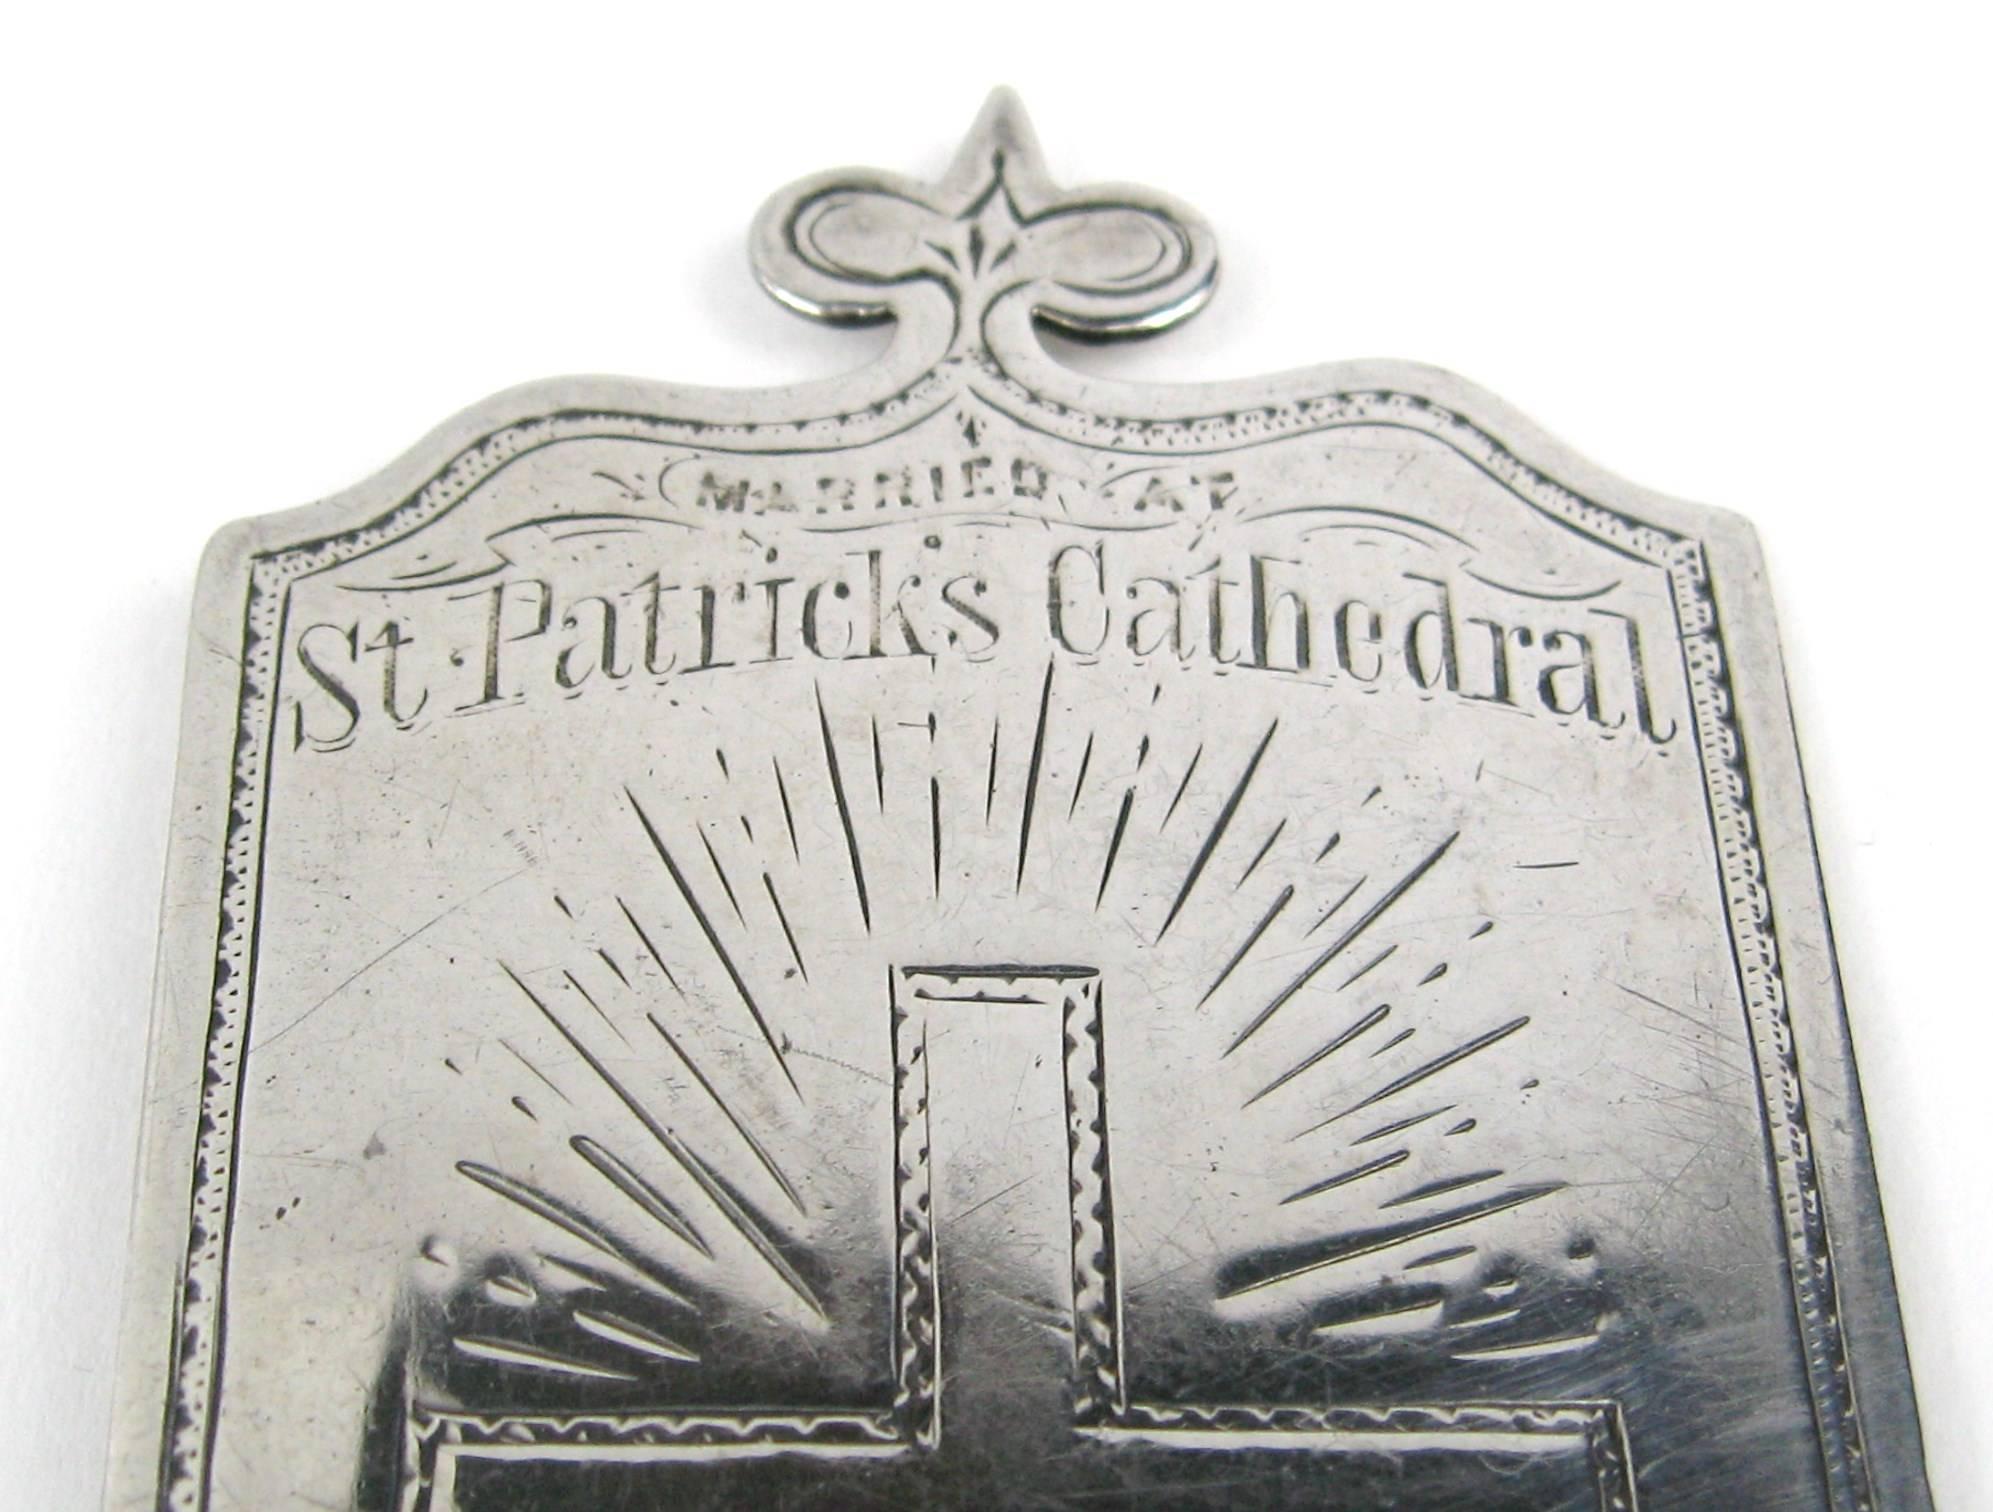 Diese silberne Plakette erinnert an die Hochzeit von James Smith JR mit Kate R. Nugent, die am Mittwoch, den 13. Mai 1874 in der St. Patrick's Cathedral stattfand. Es folgen die Eheschließungen anderer Familienmitglieder, auf der Rückseite: PAX